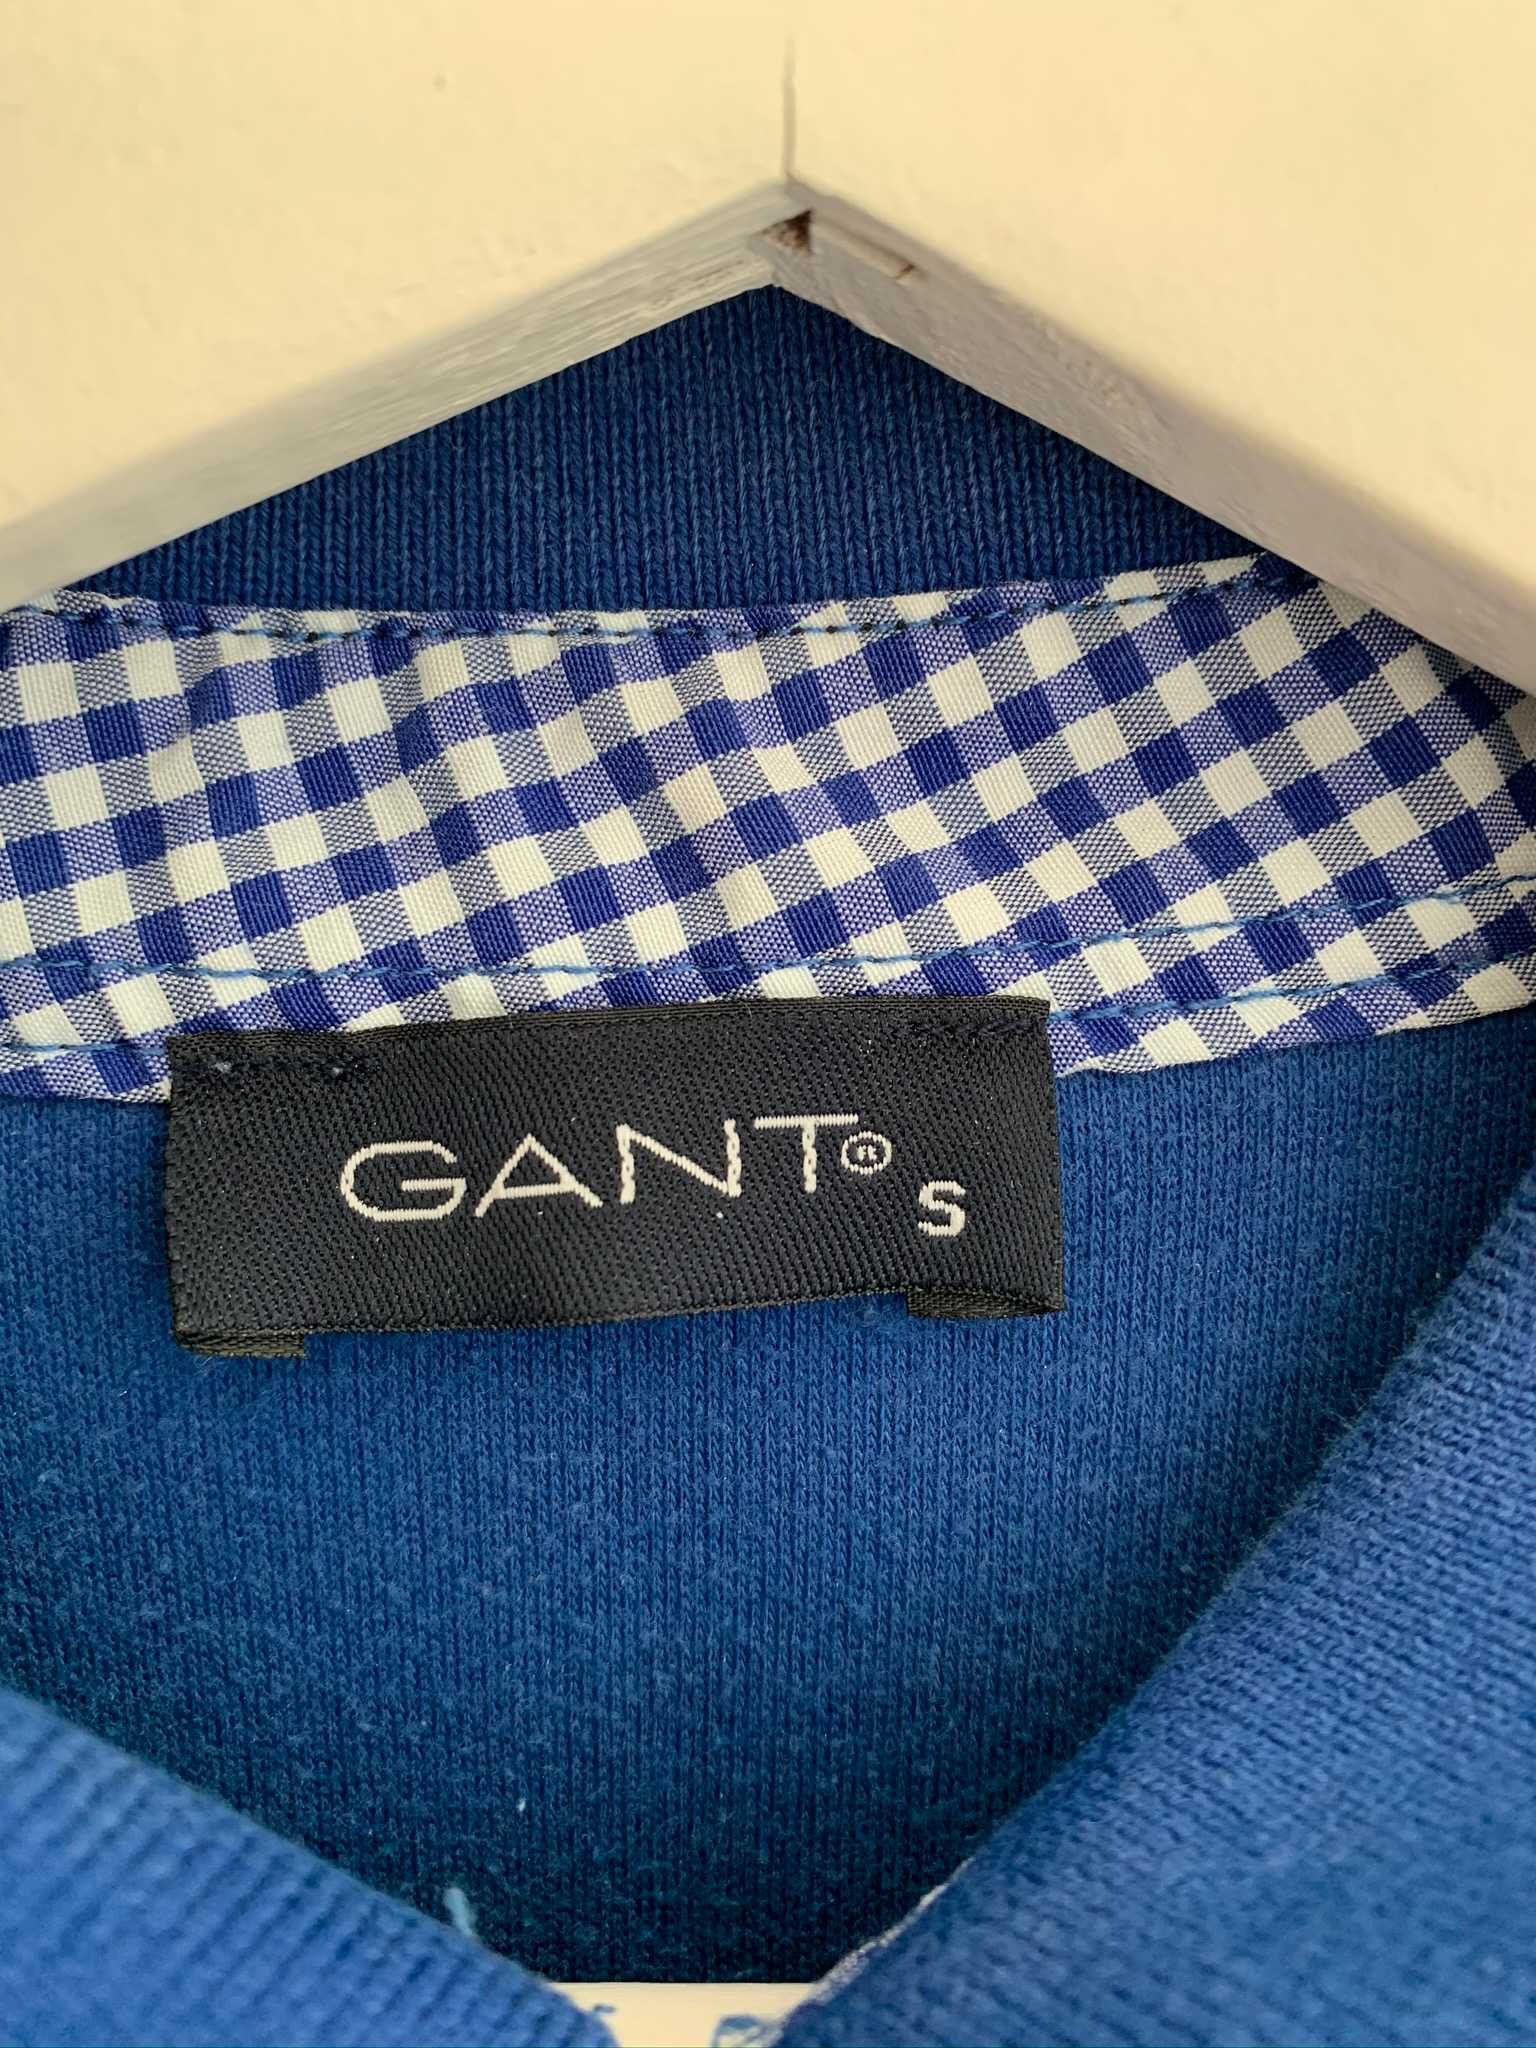 Кофта Gant синяя. Производство Турция.